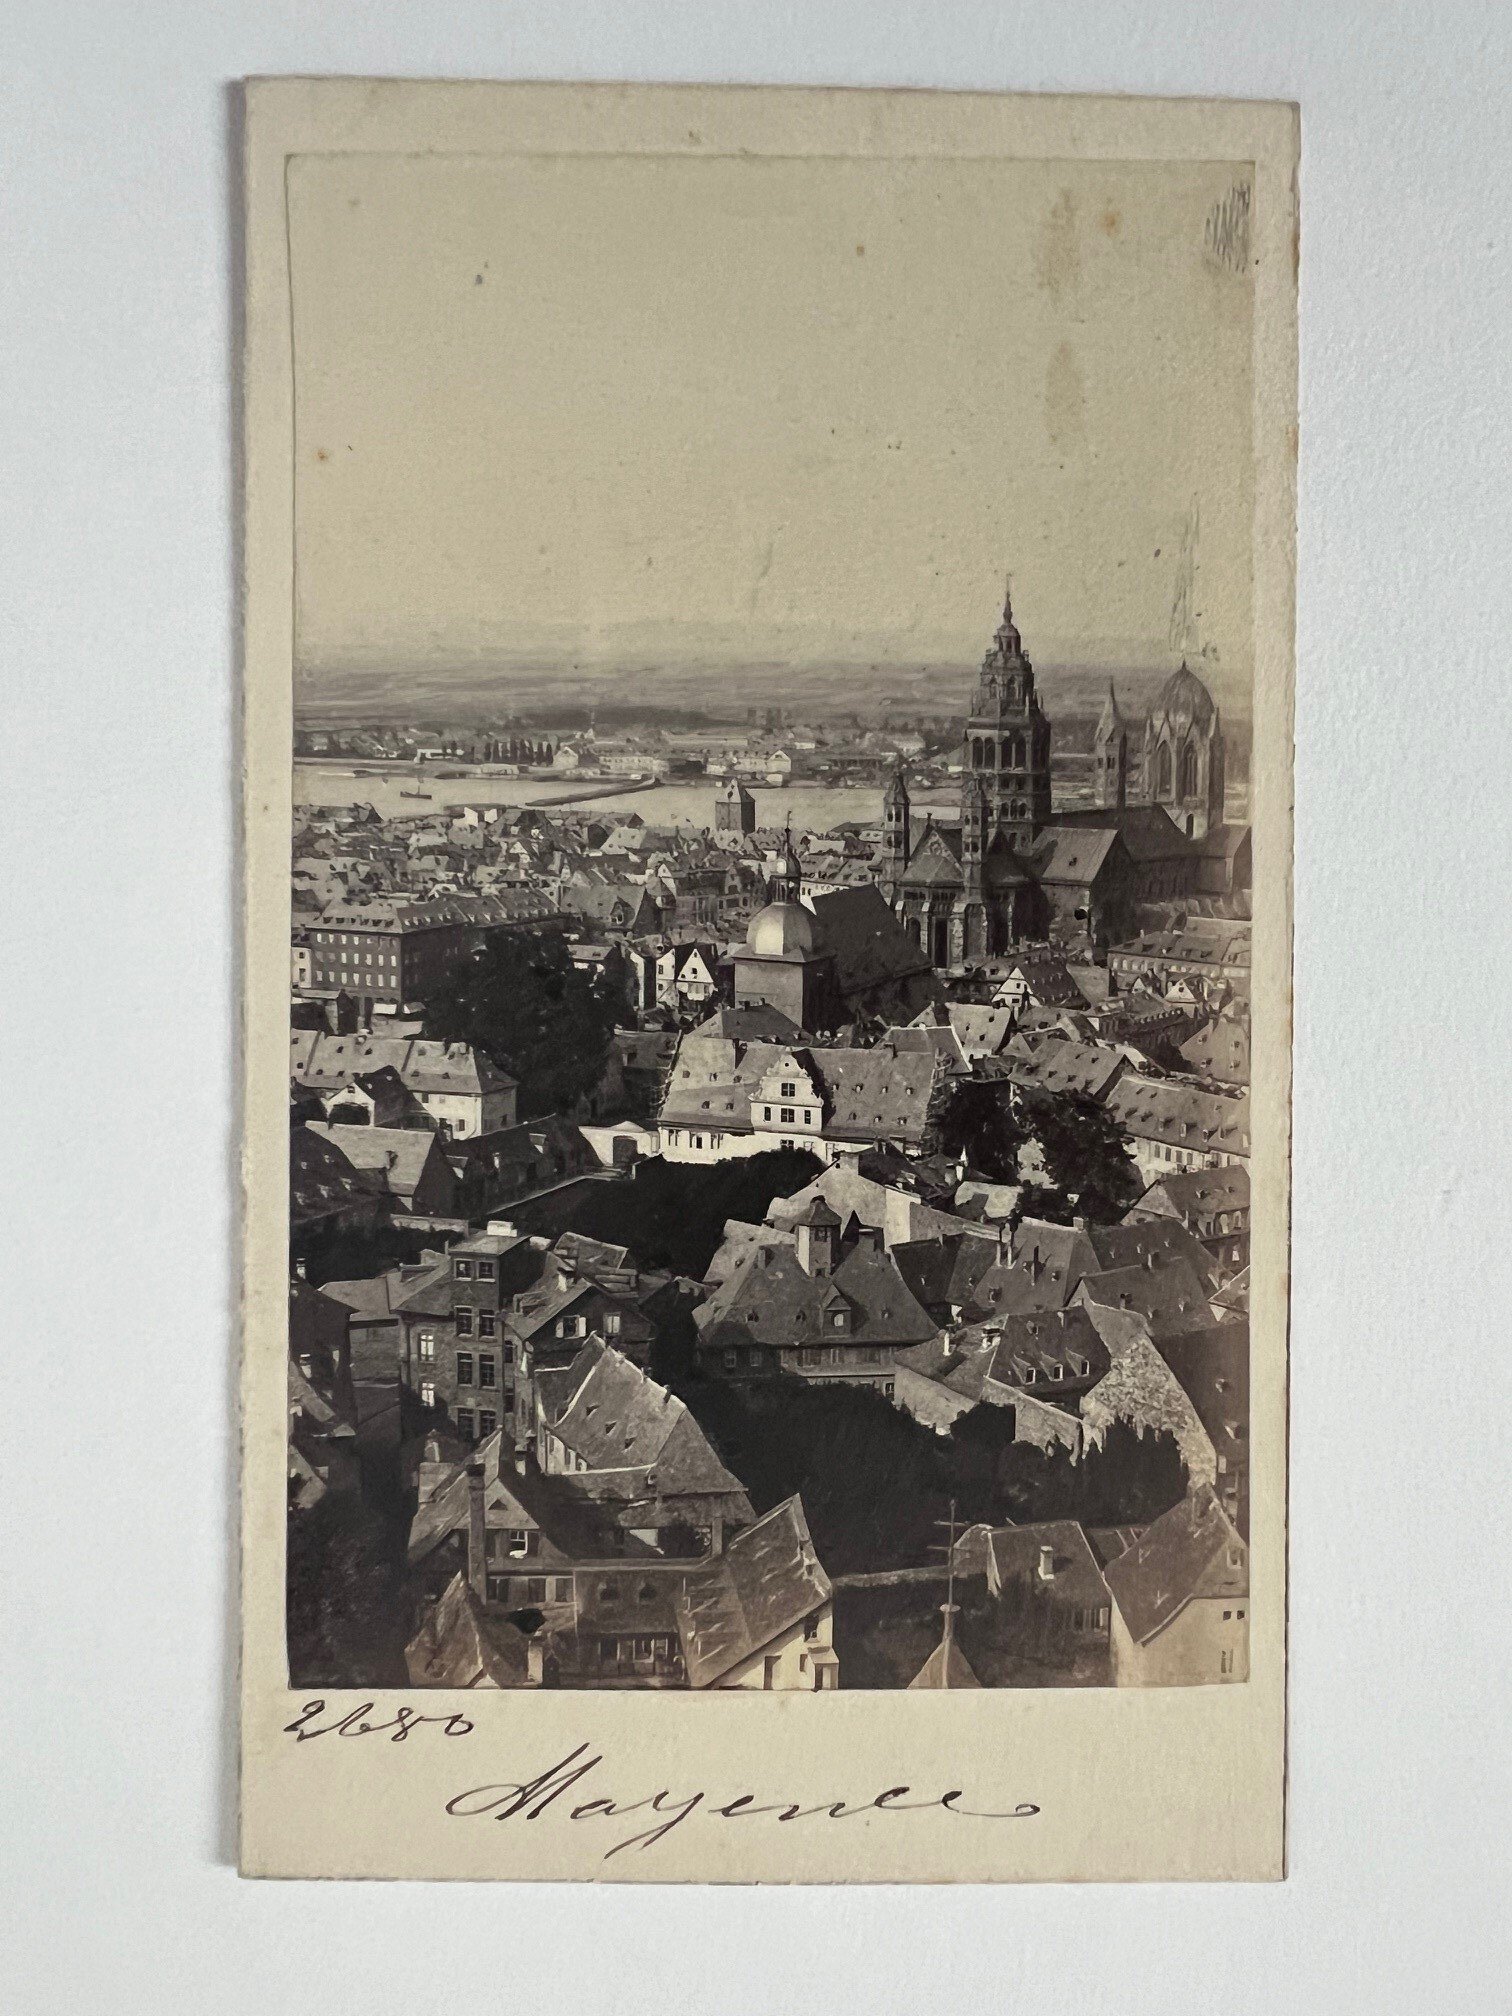 CdV, Adolphe Braun, Mainz, Der Mainzer Dom, ca. 1865. (Taunus-Rhein-Main - Regionalgeschichtliche Sammlung Dr. Stefan Naas CC BY-NC-SA)